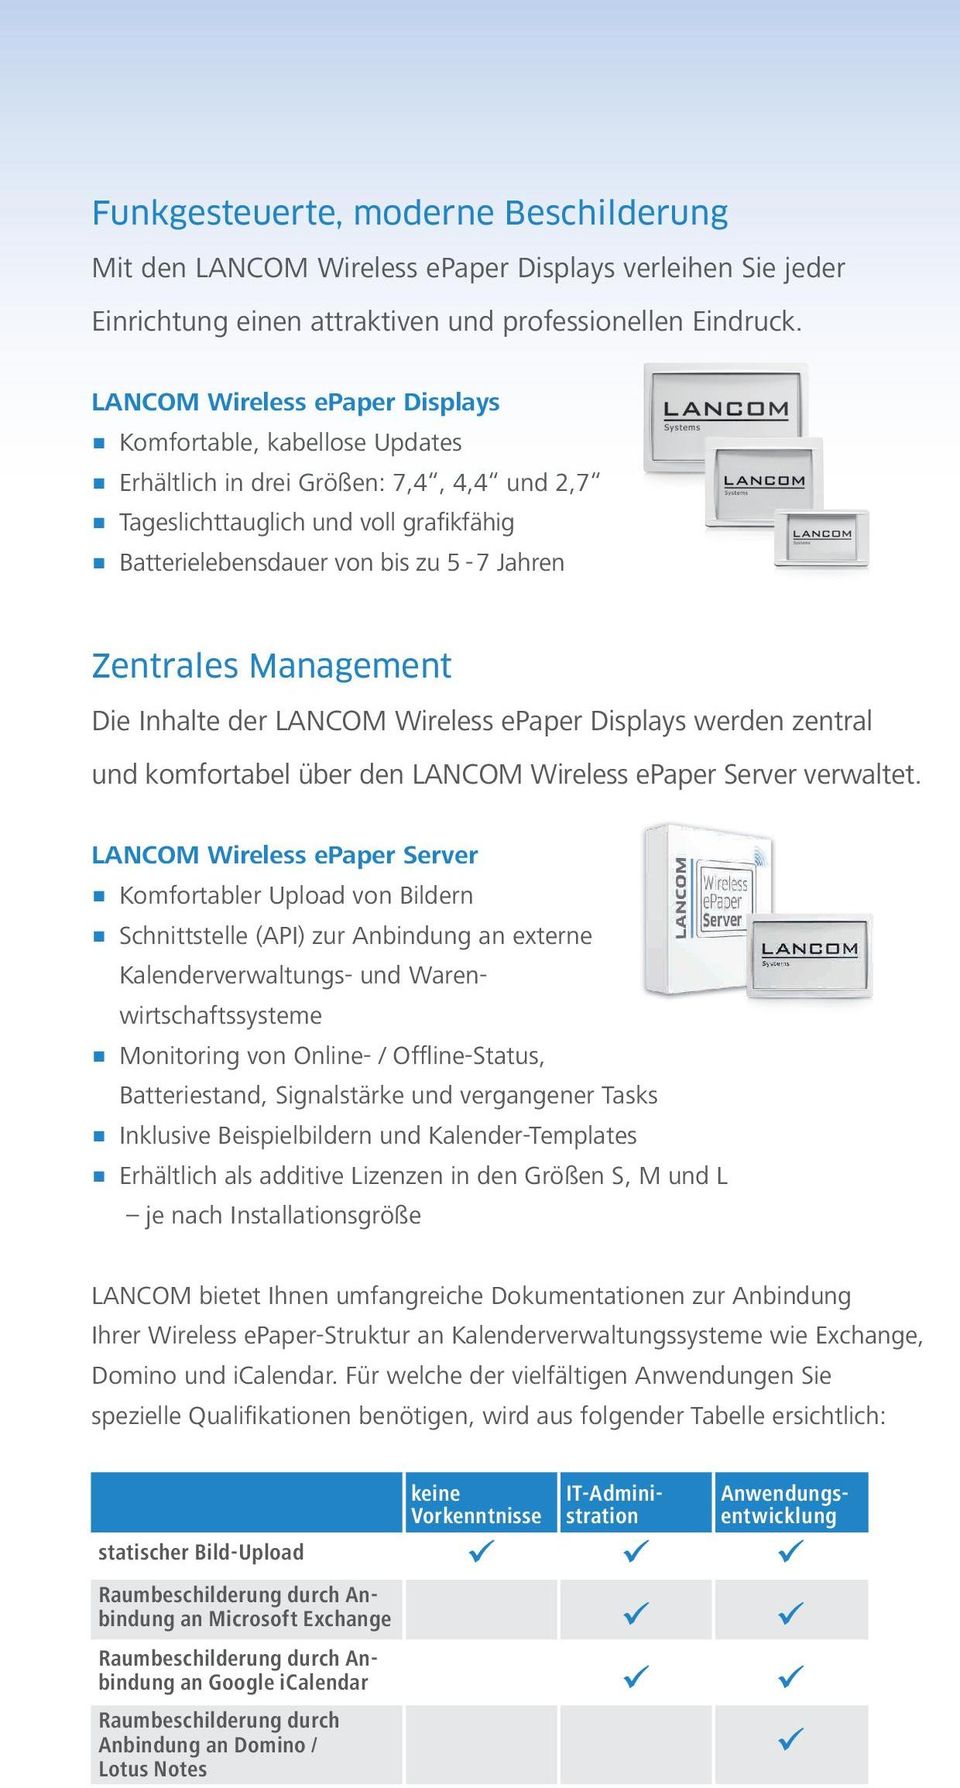 Zentrales Management Die Inhalte der LANCOM Wireless epaper Displays werden zentral und komfortabel über den LANCOM Wireless epaper Server verwaltet.